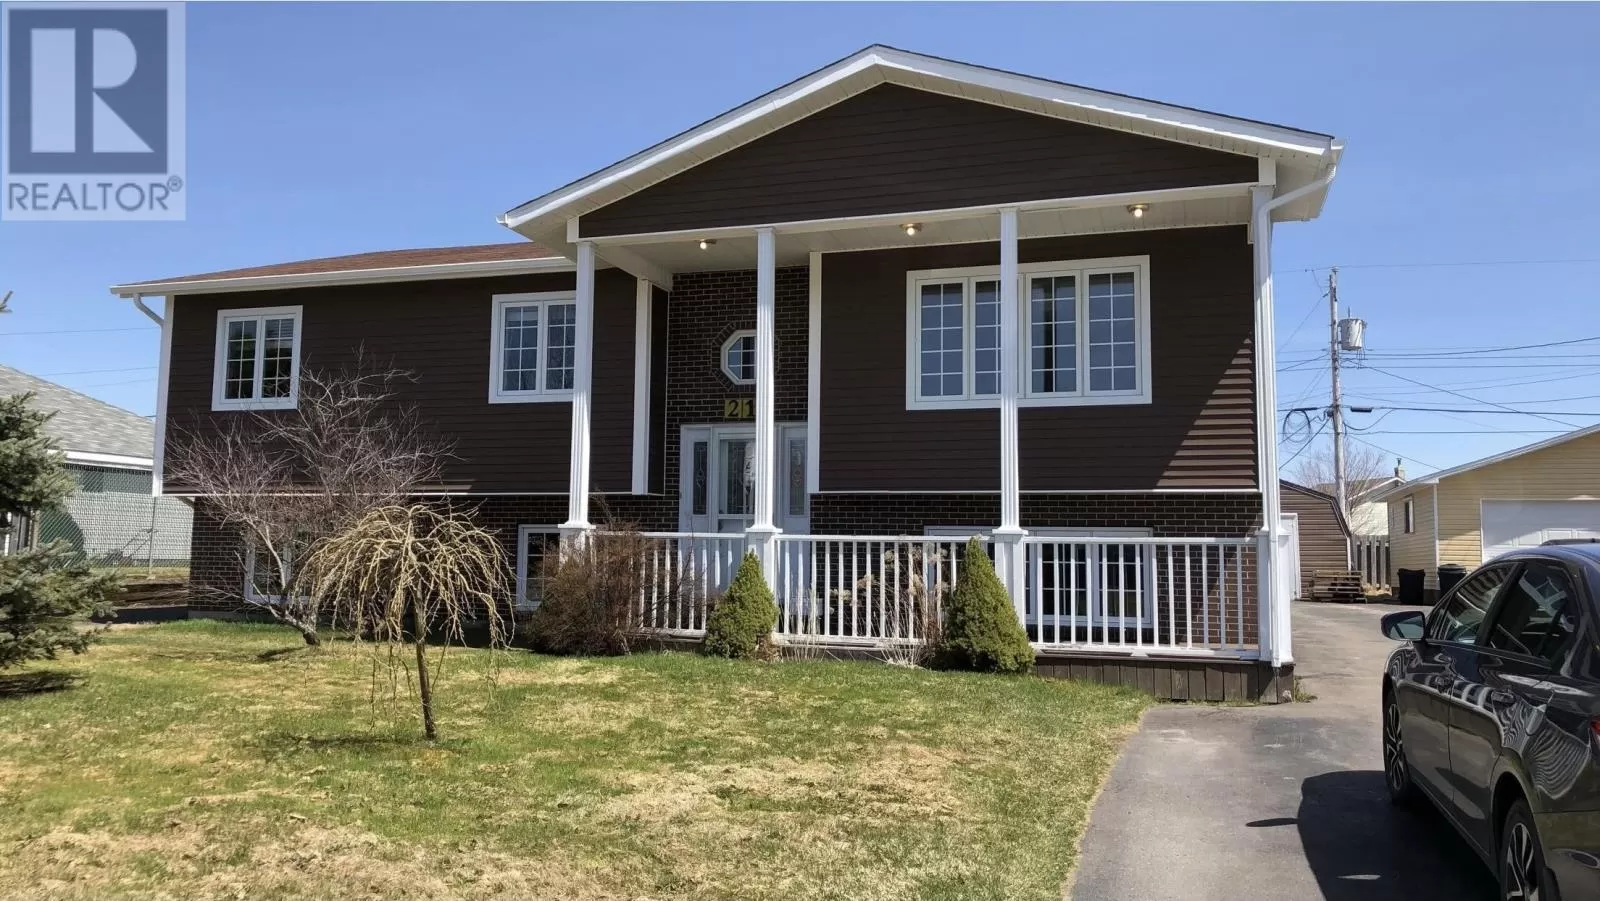 House for rent: 21 Ireland Drive, Grand Falls-Windsor, Newfoundland & Labrador A2A 2W4